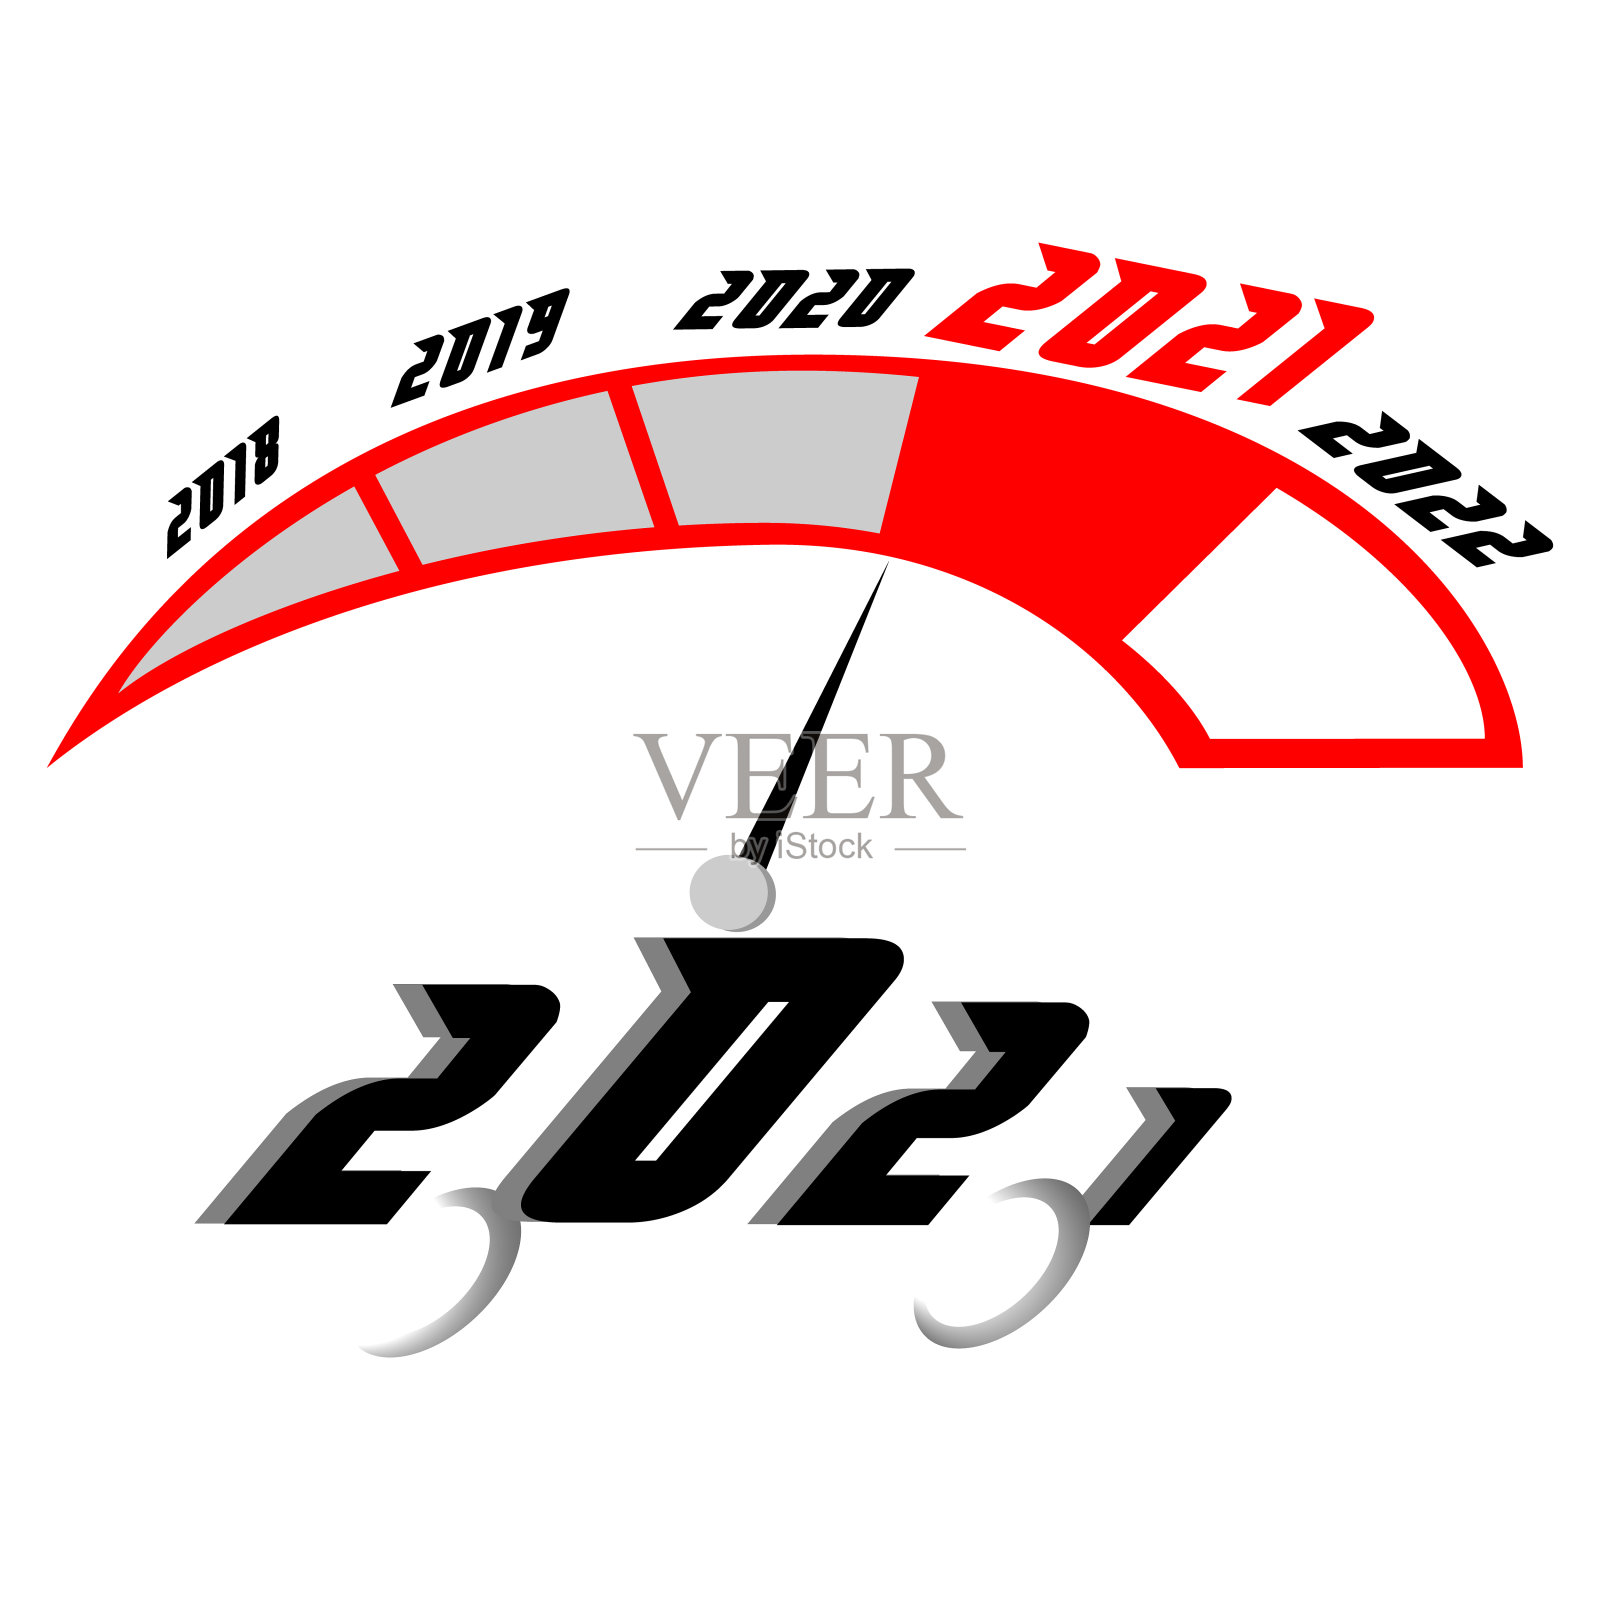 速度计的矢量图，显示快速通过的一年。指向2021年新年的指示箭头用赛车的速度来比喻。年的概念设计元素图片